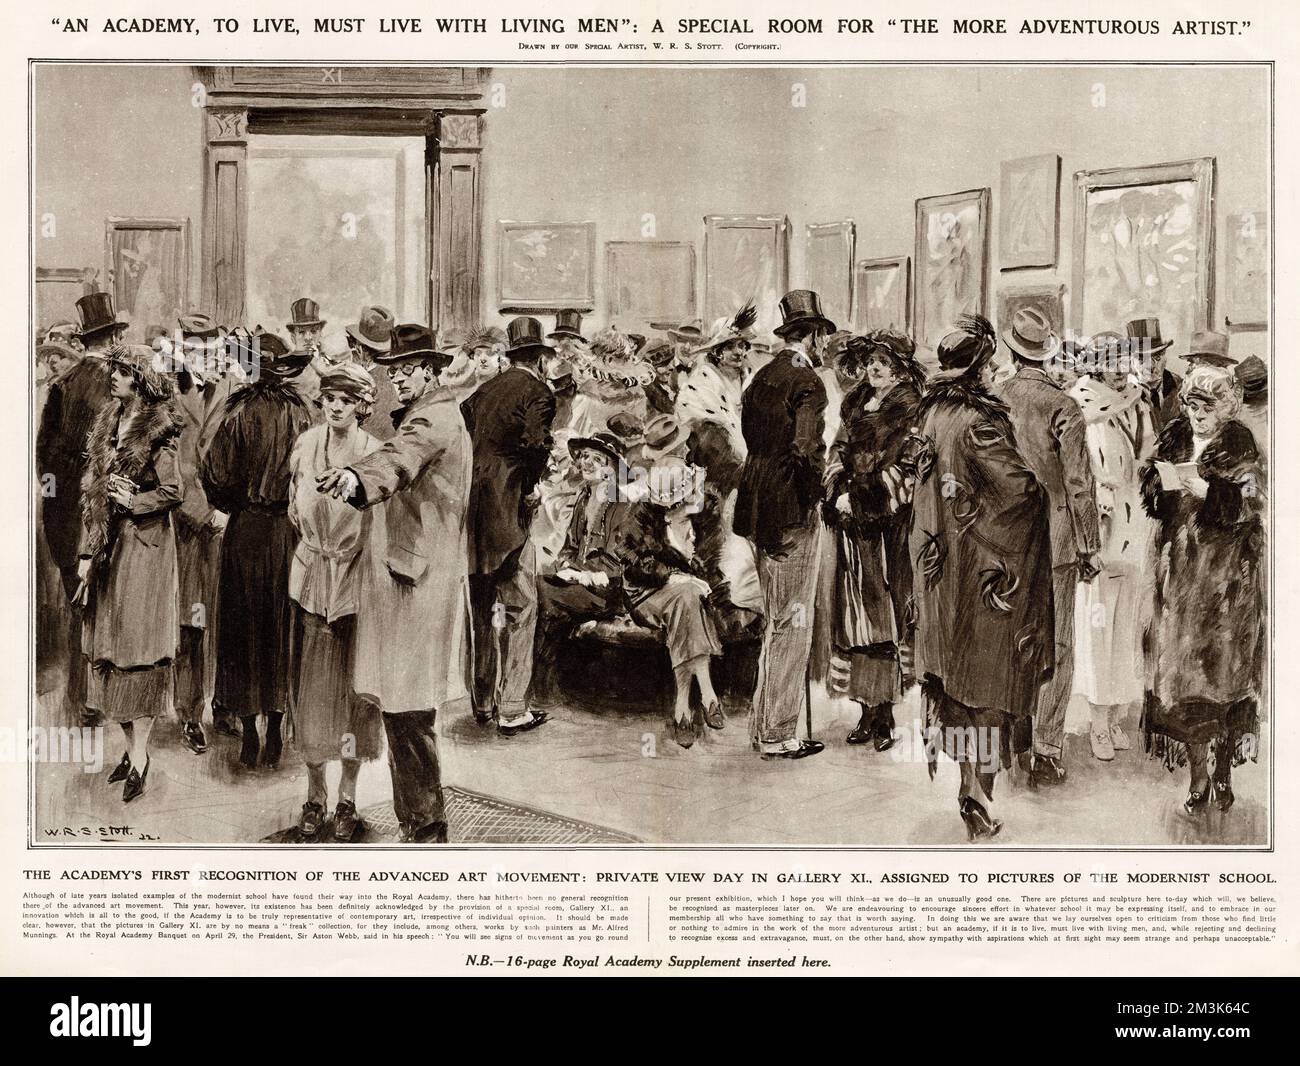 Multitud de visitantes en el Private View Day de la exposición de la Royal Academy, Burlington House, Londres, 1922. Esta era la escena de la Galería XI que, por primera vez, había sido asignada a fotografías de la Escuela Modernista. 1922 Foto de stock